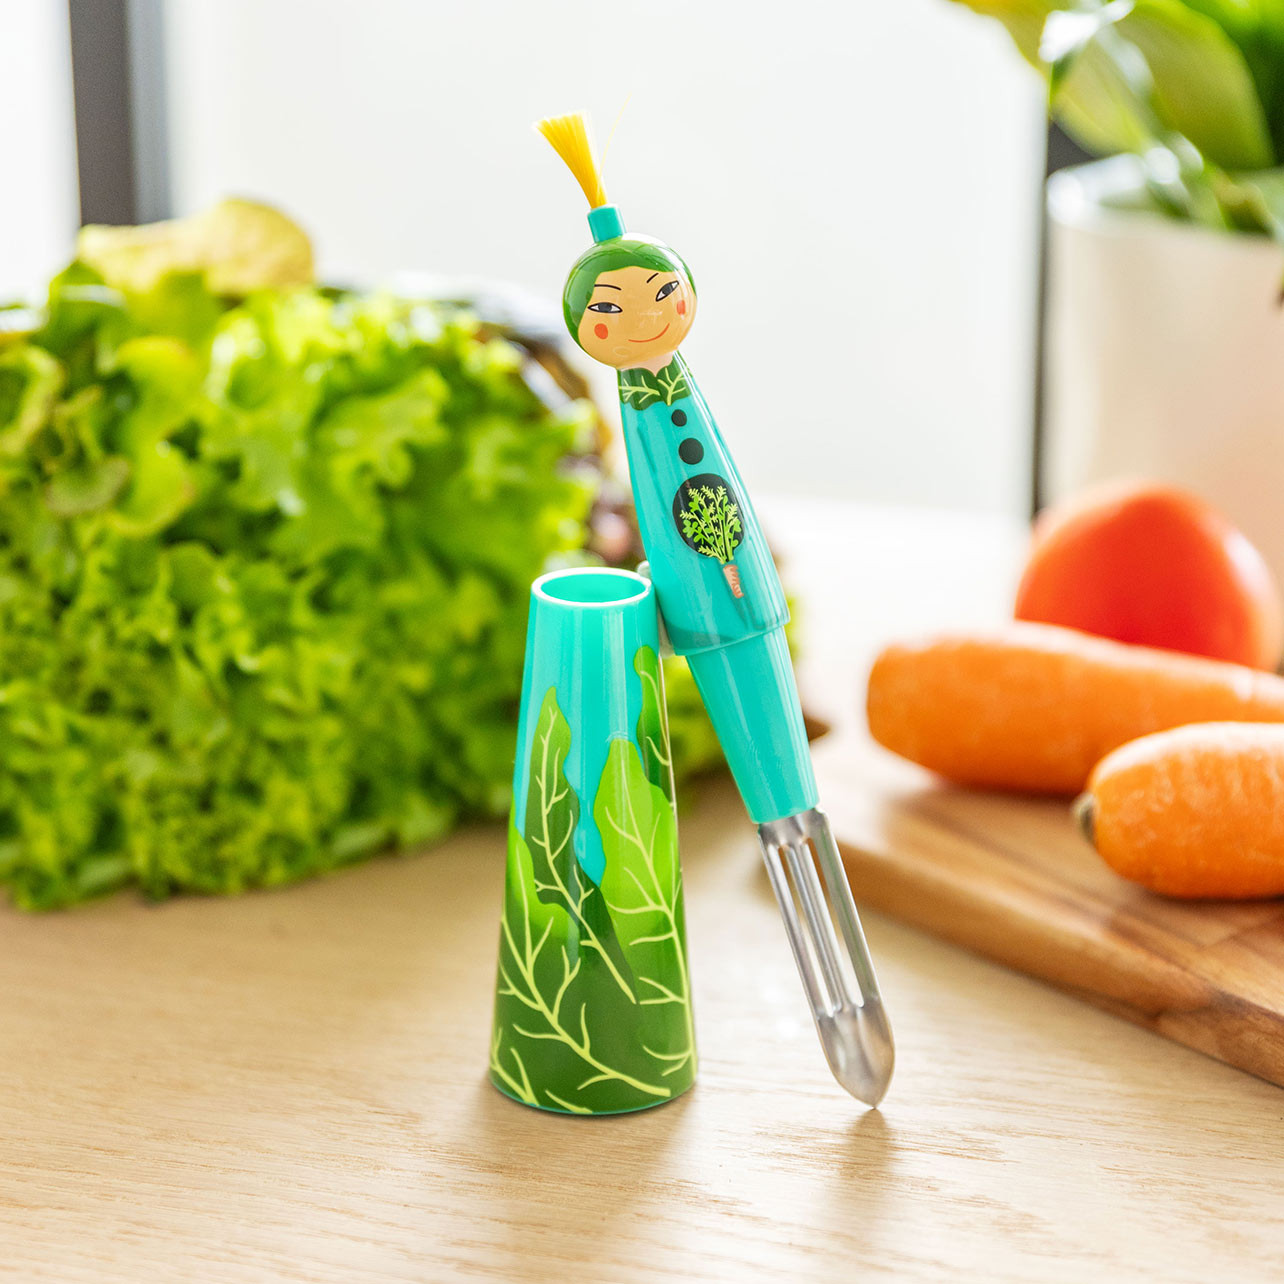 Économe à légumes - Ustensiles de Cuisine - Gadgets de Cuisine